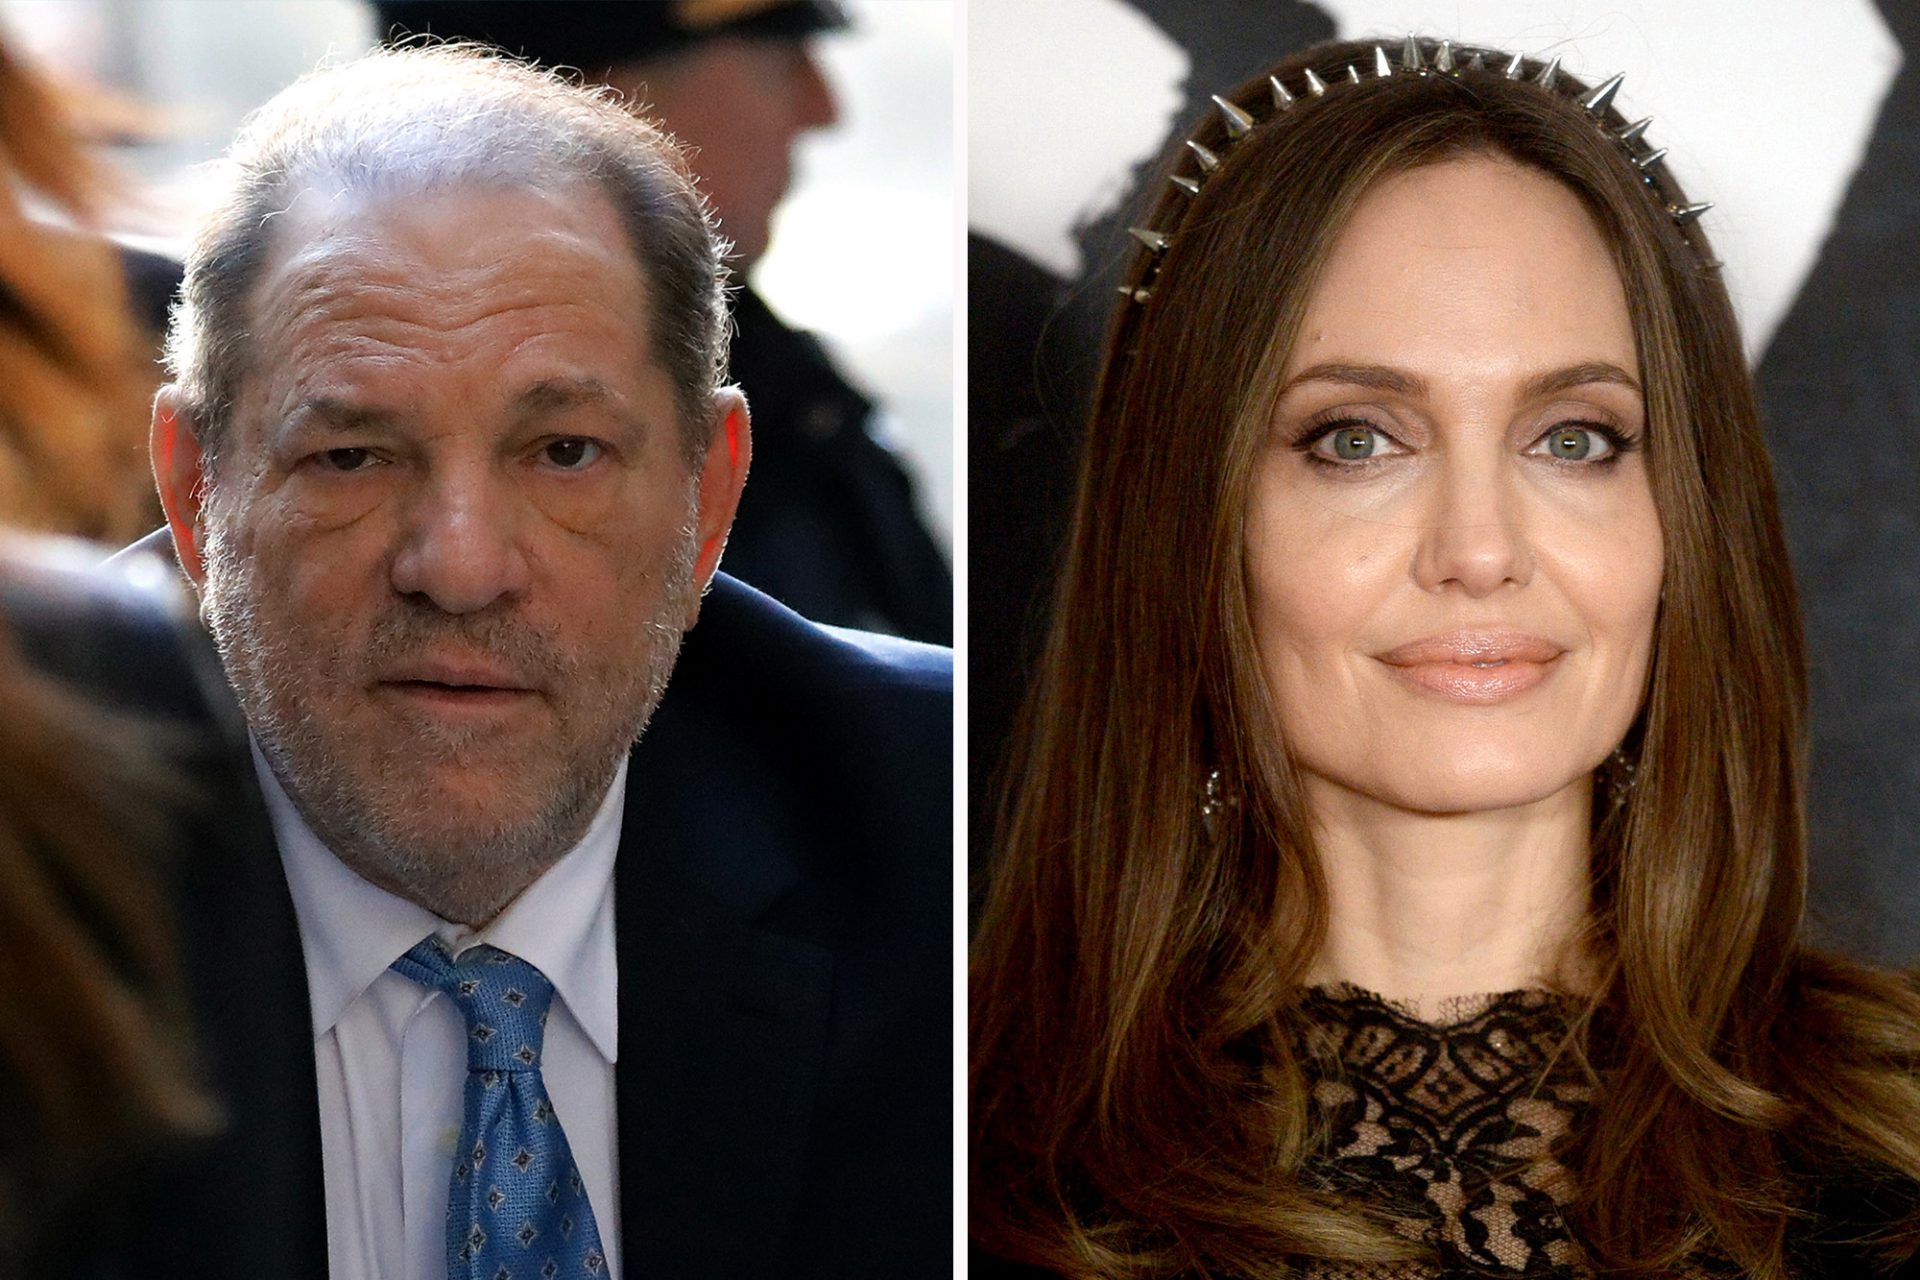 Harvey Weinstein calls Angelina Jolie accusations ‘overtly untrue’